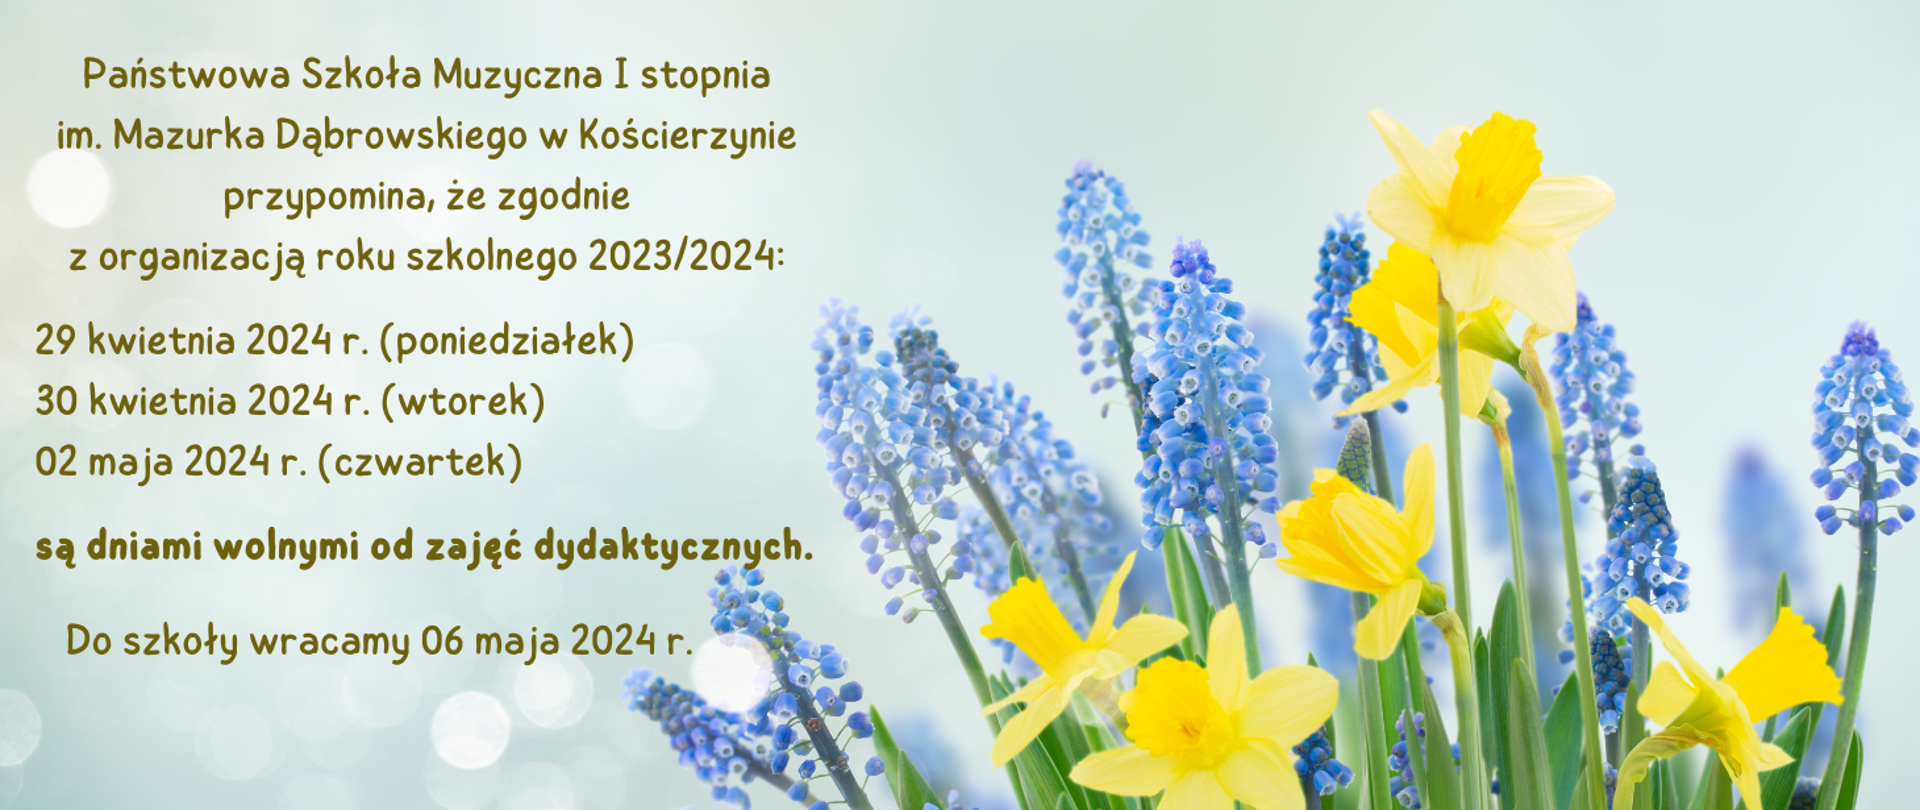 Po prawej stronie zdjęcia wiosenne kwiaty: żółte narcyzy i niebieskie szafirki. Po lewej stronie brązową czcionką informacja o dniach wolnych od zajęć dydaktycznych w okresie majówki.